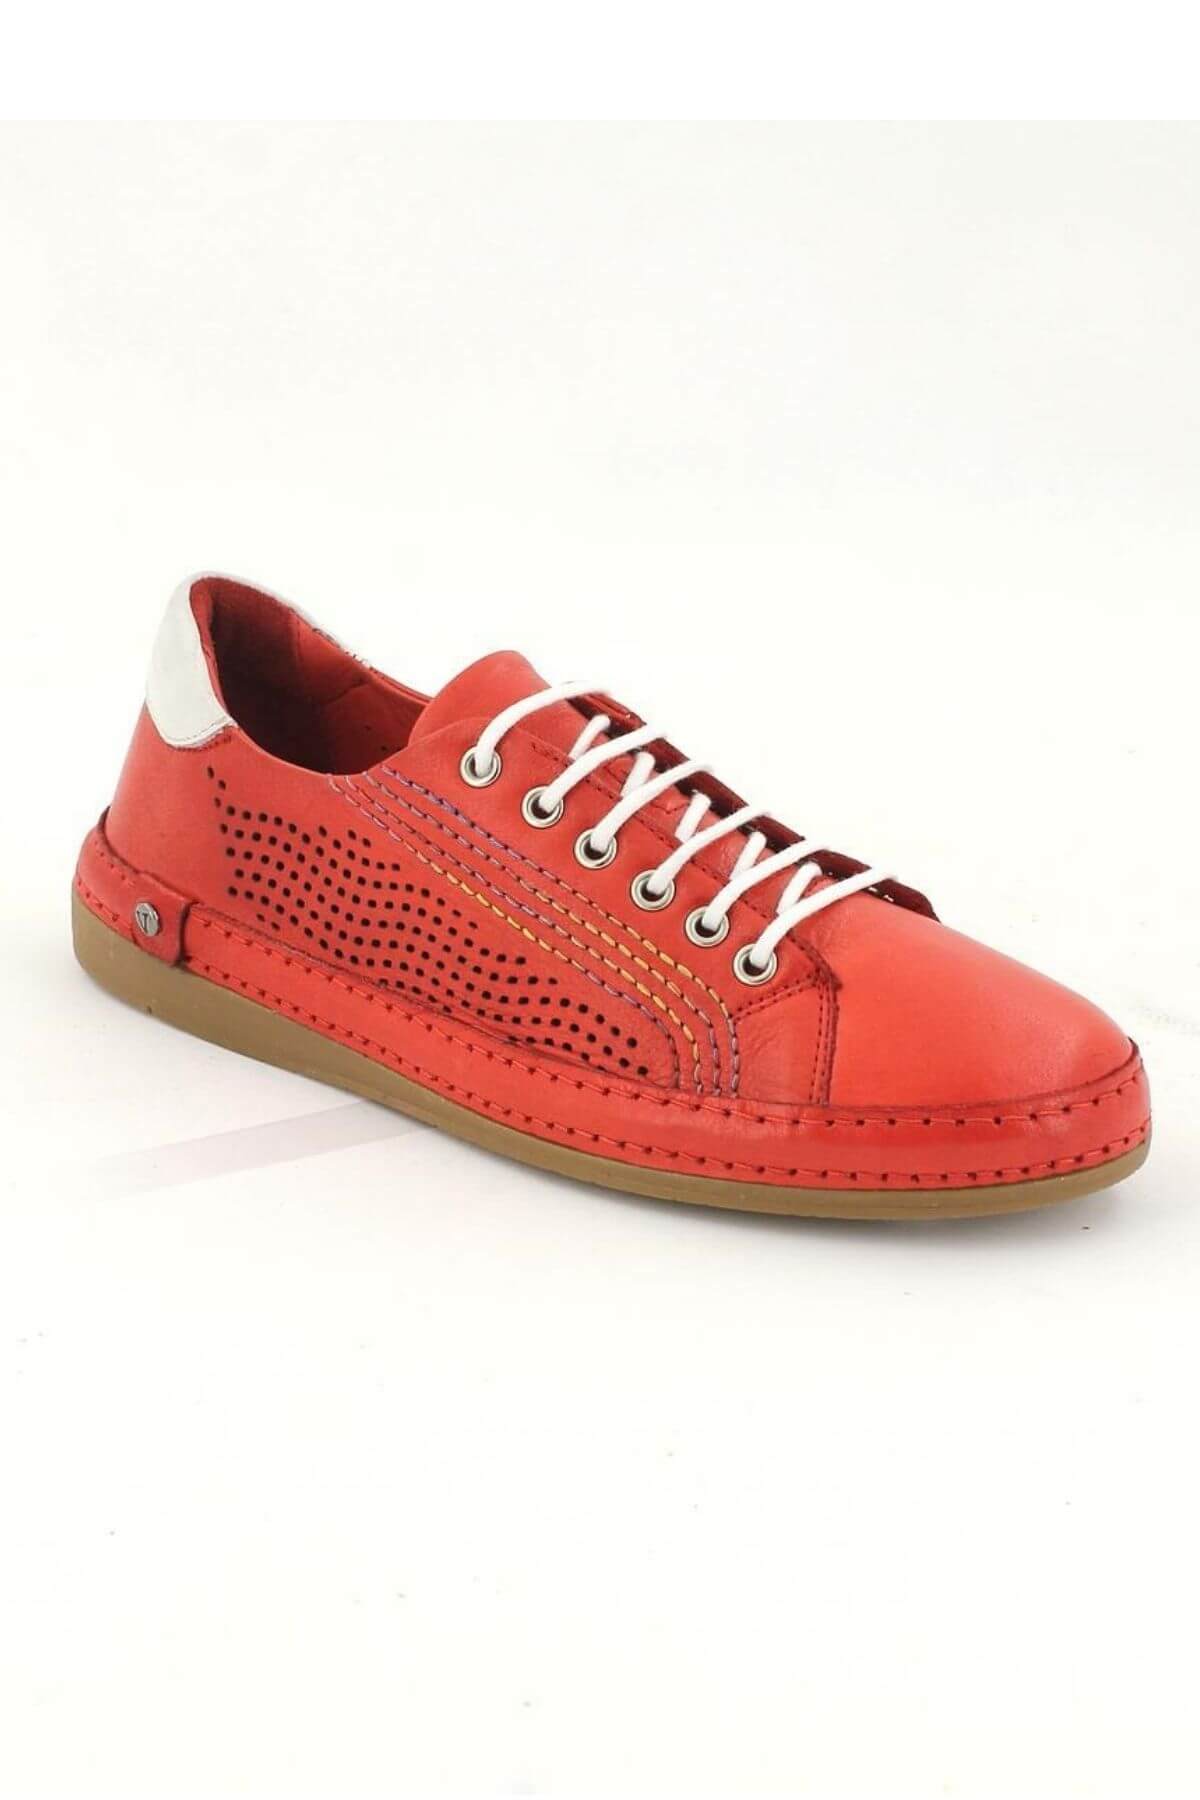 Kadın Comfort Deri Ayakkabı Kırmızı 2211204Y